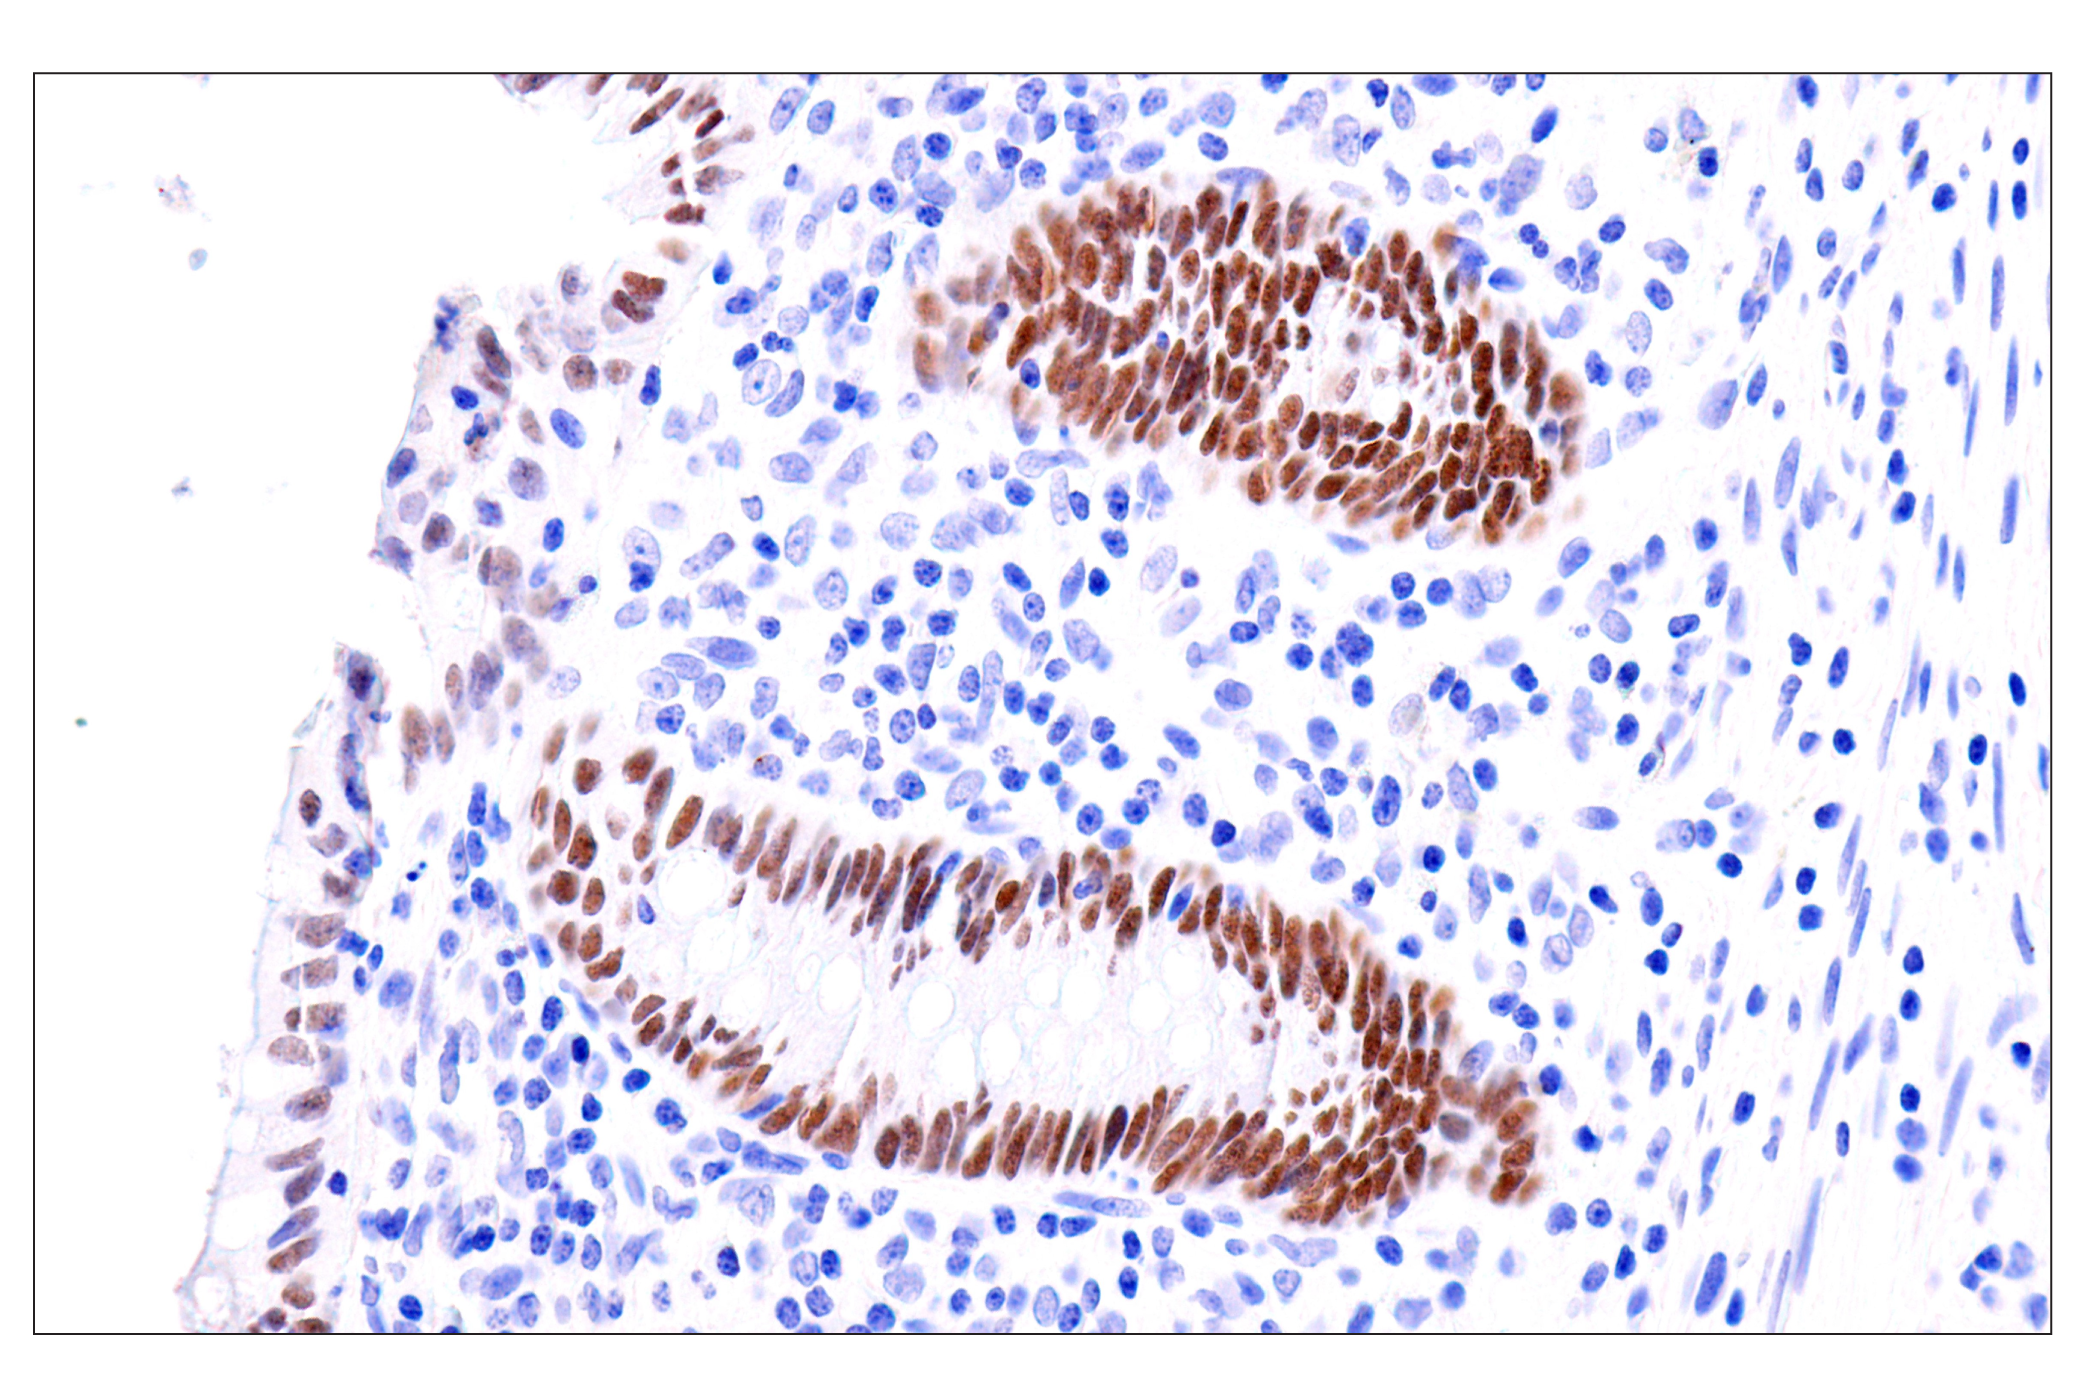  Image 54: GATA Transcription Factor Antibody Sampler Kit